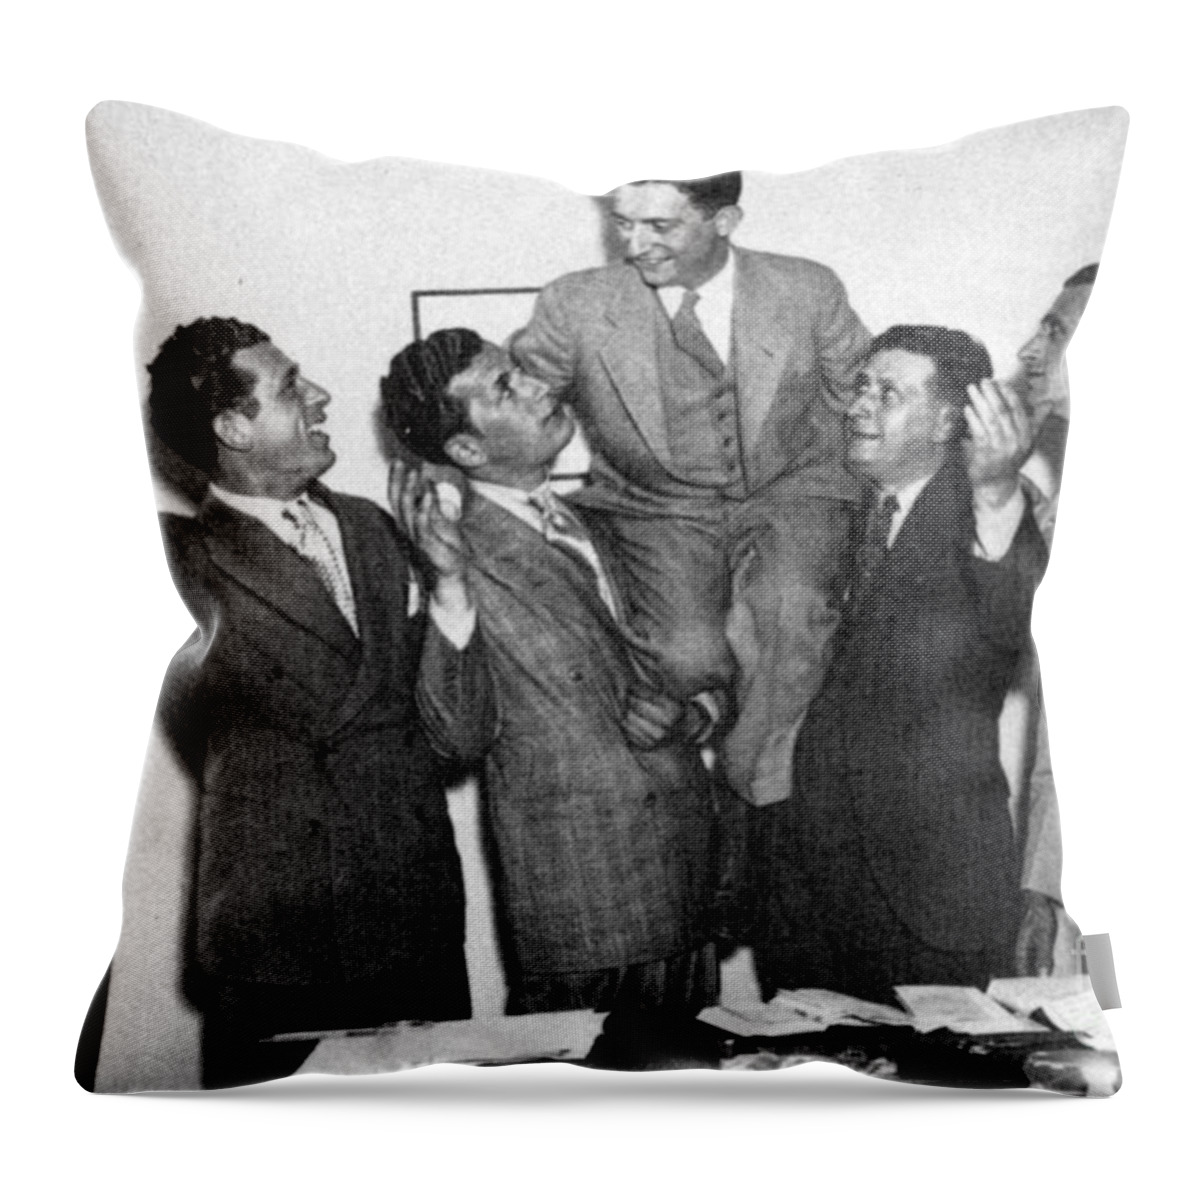 1935 Throw Pillow featuring the photograph Schechter Case 1935 by Granger